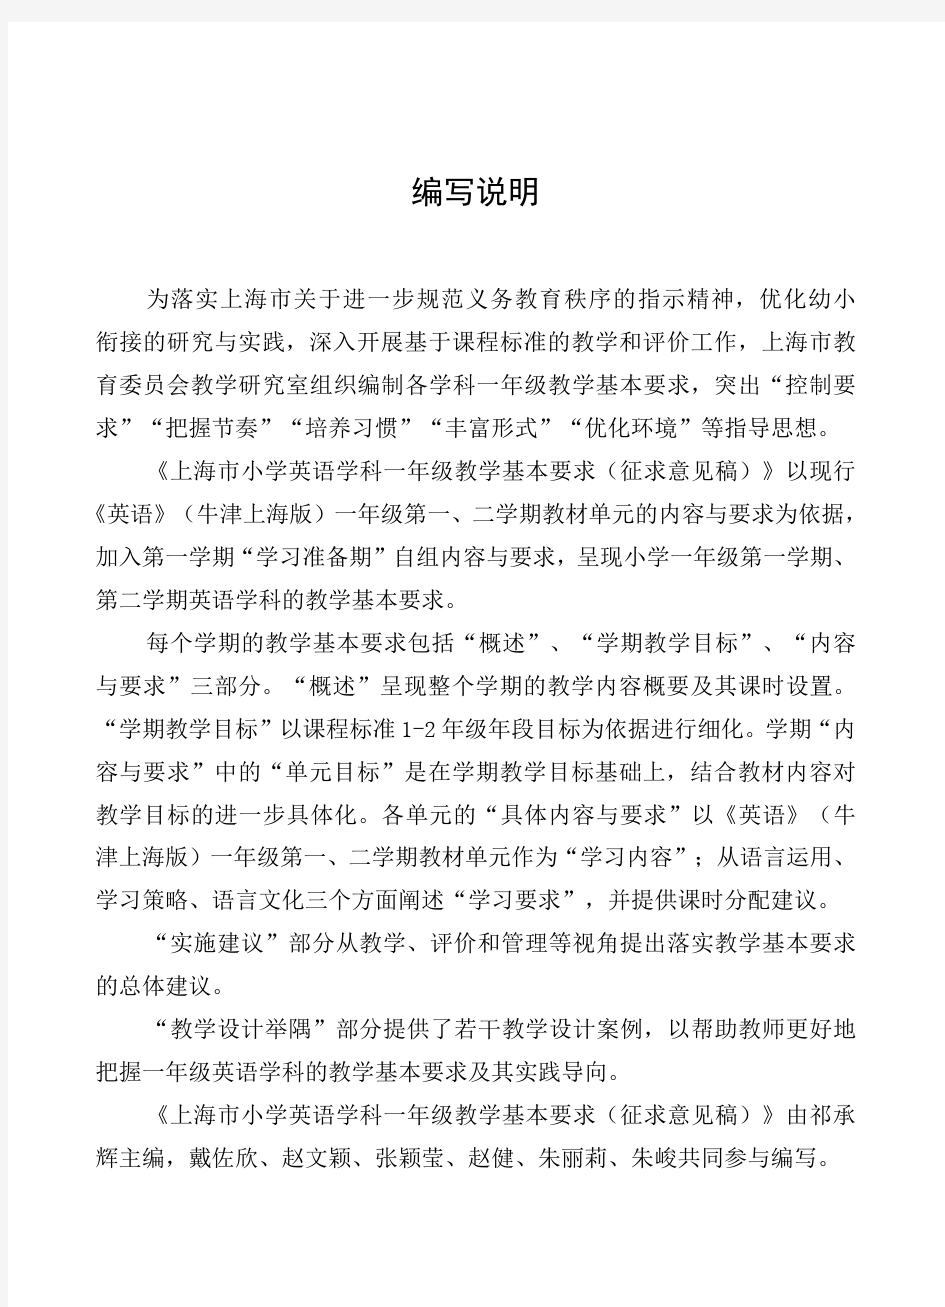 上海市小学一年级英语教学基本要求